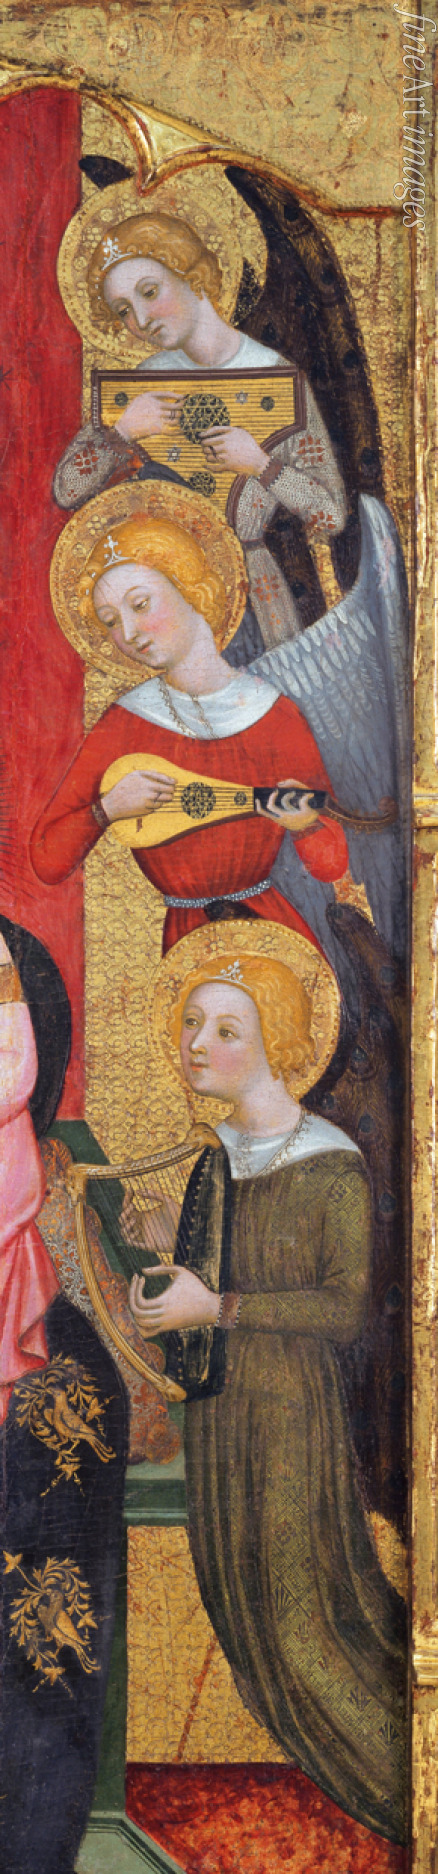 Serra Pere - Madonna mit Christkind und musizierenden Engeln (Detail)